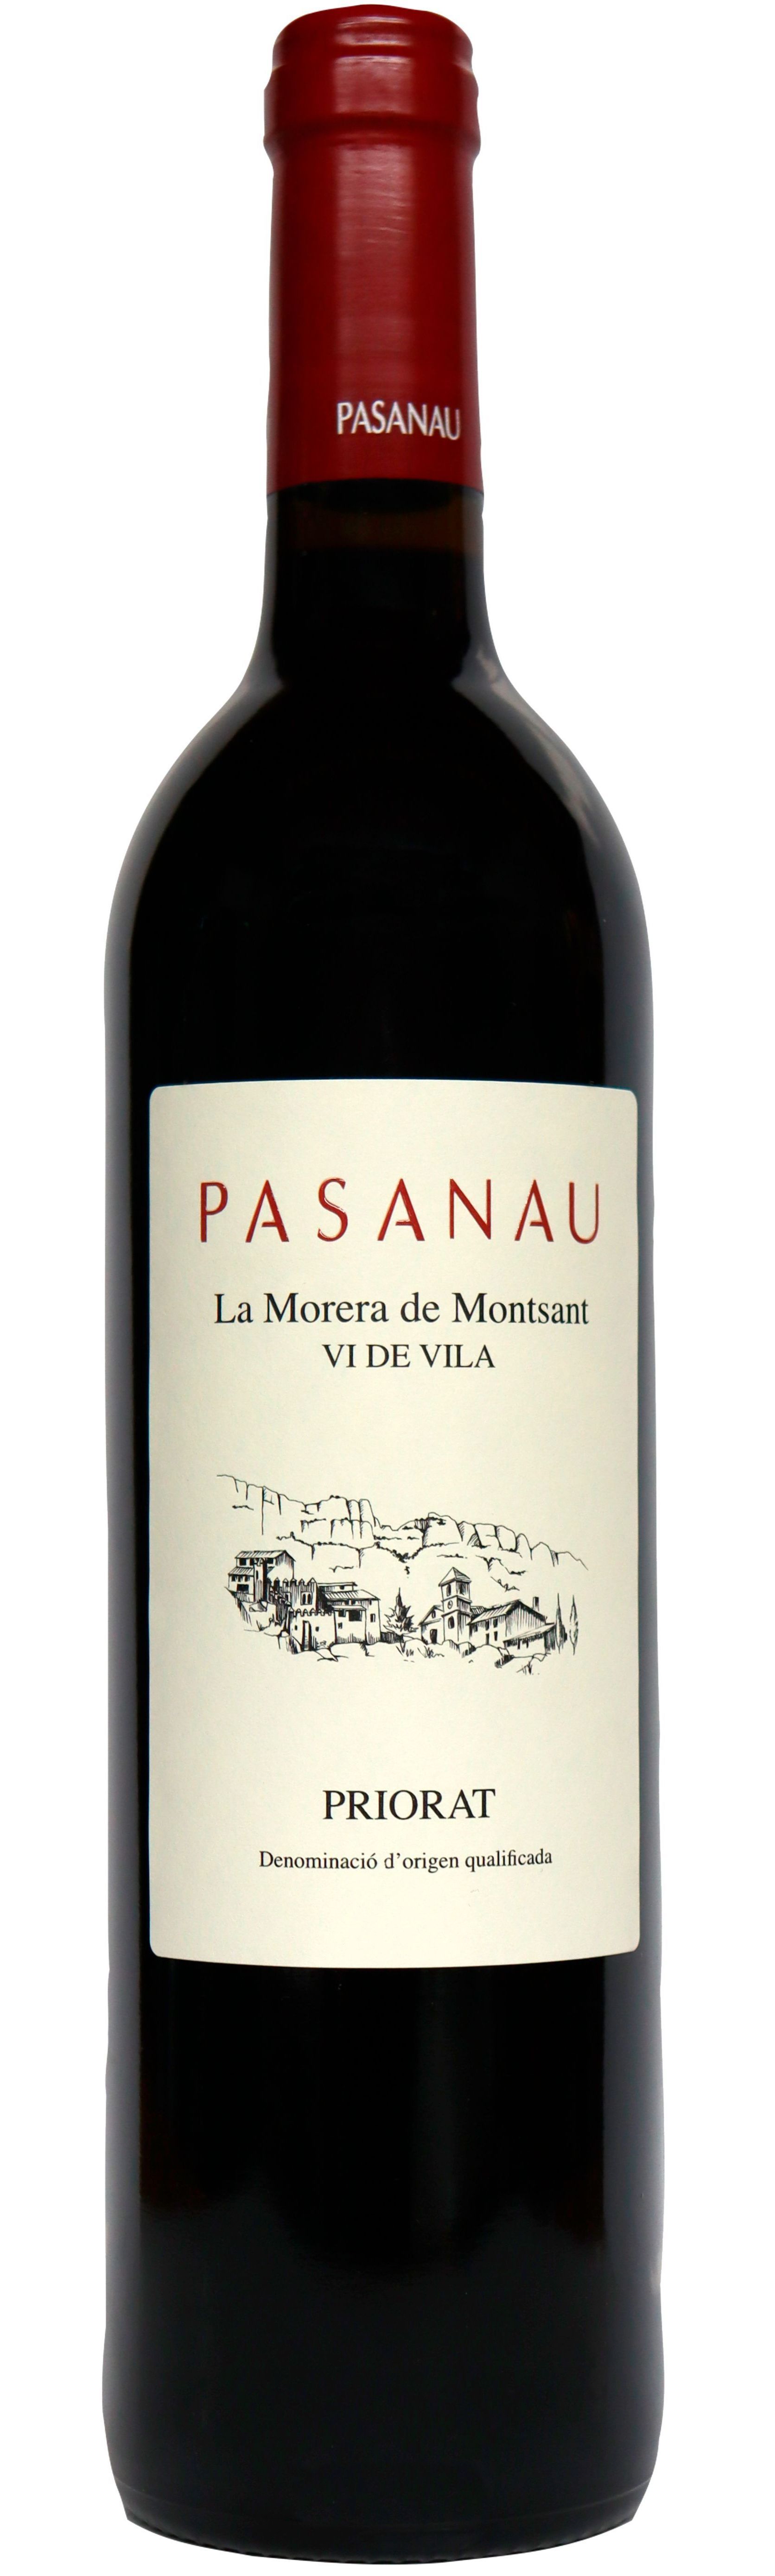 PASANAU GERMANS SOCIEDAD LIMITADA. PASANAU, Vi de Vila La Morera de Montsant, Rosso, 2019, Priorat / Priorato. Bottle image